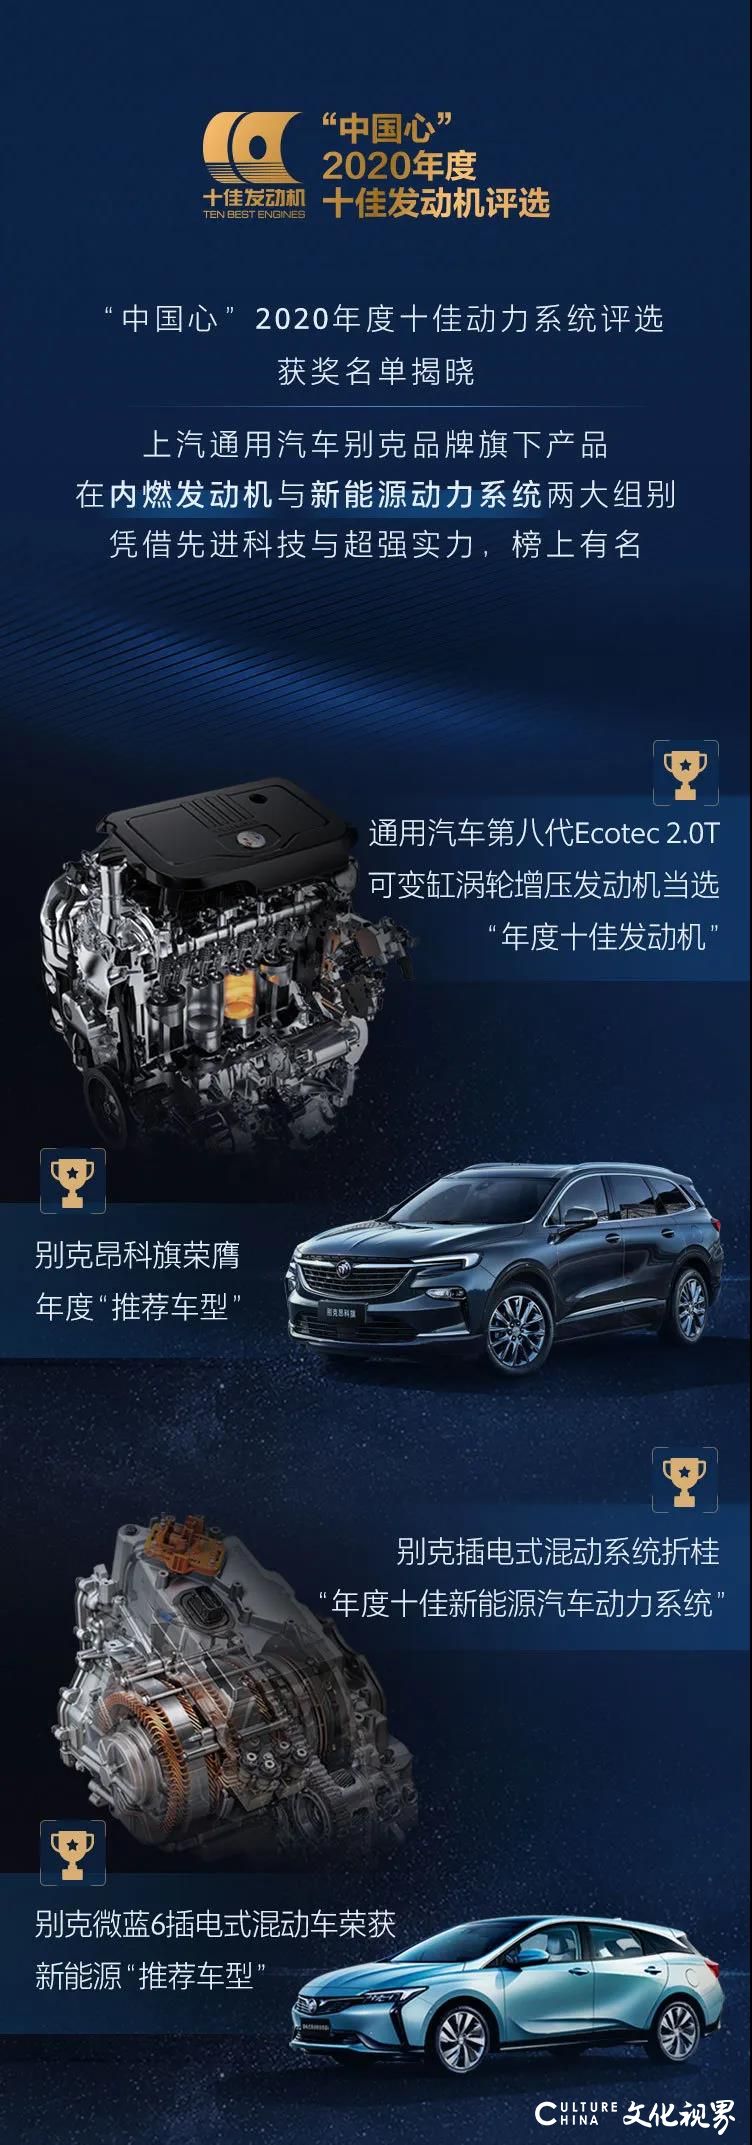 上海通用汽车别克品牌旗下产品上榜“中国心·2020年度十佳动力系统”，别克微蓝6插电式混动车获评“推荐车型”